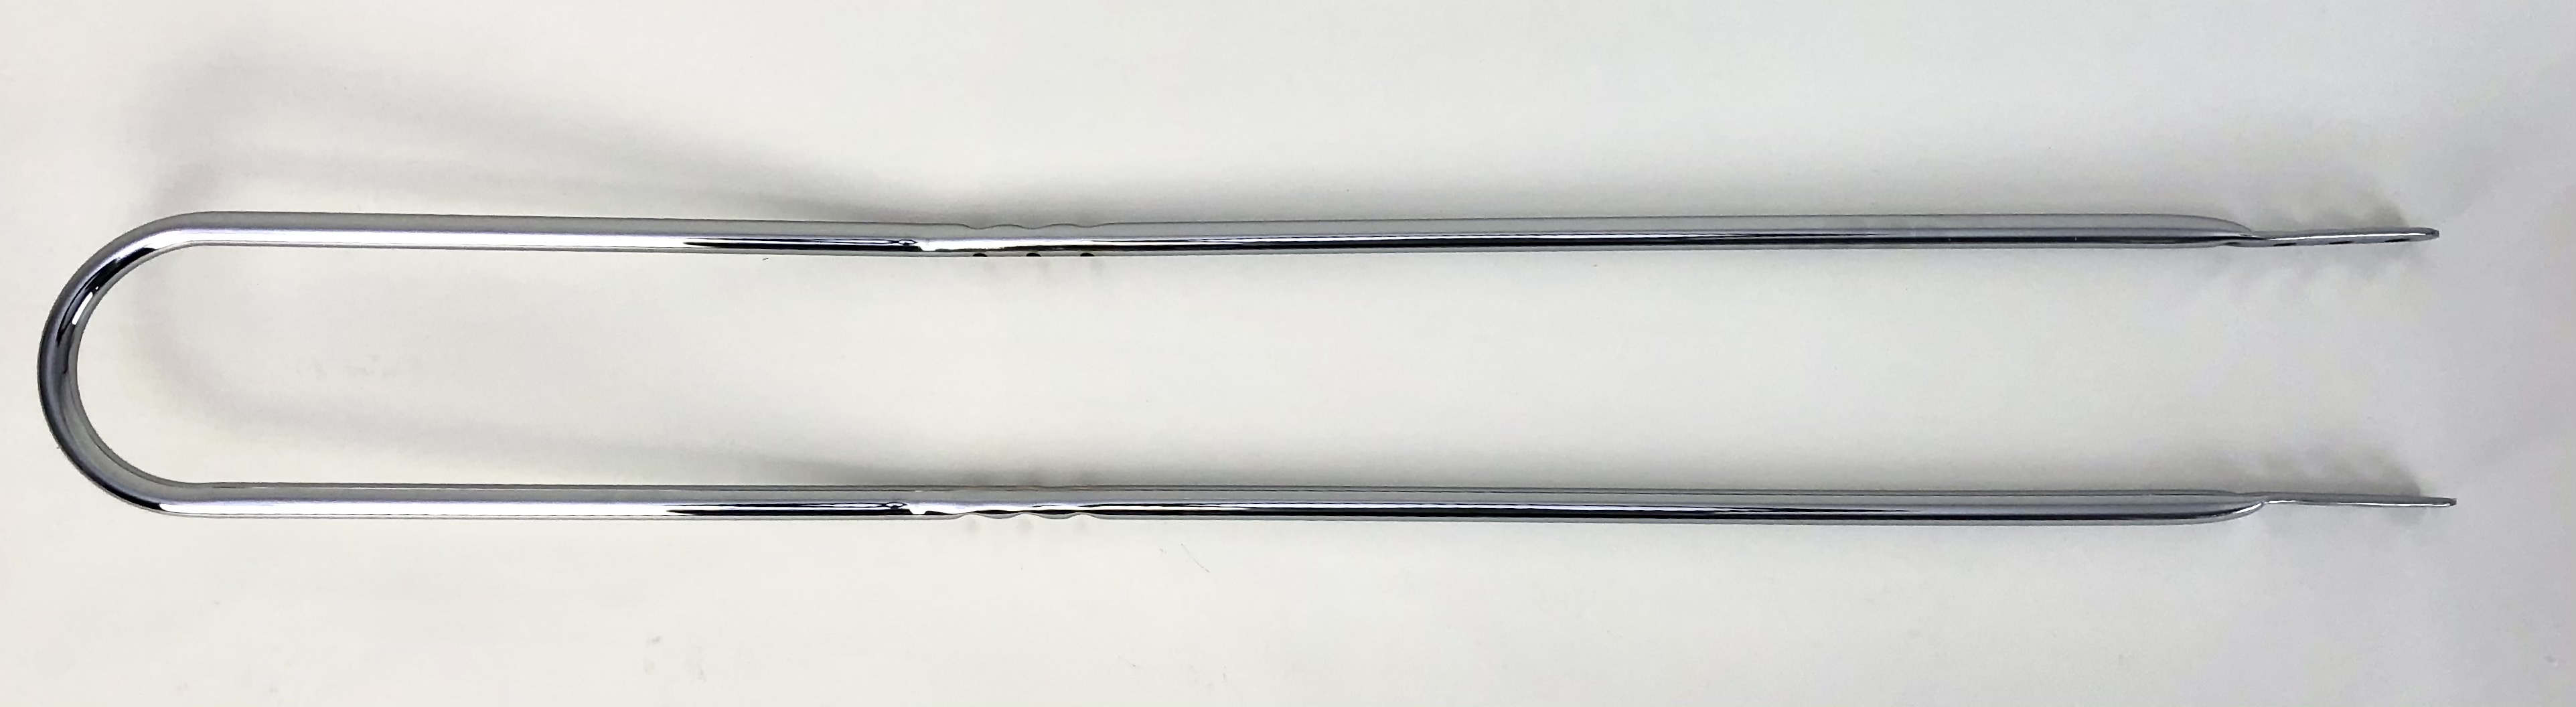 Sissybar Xtralong 107 cm